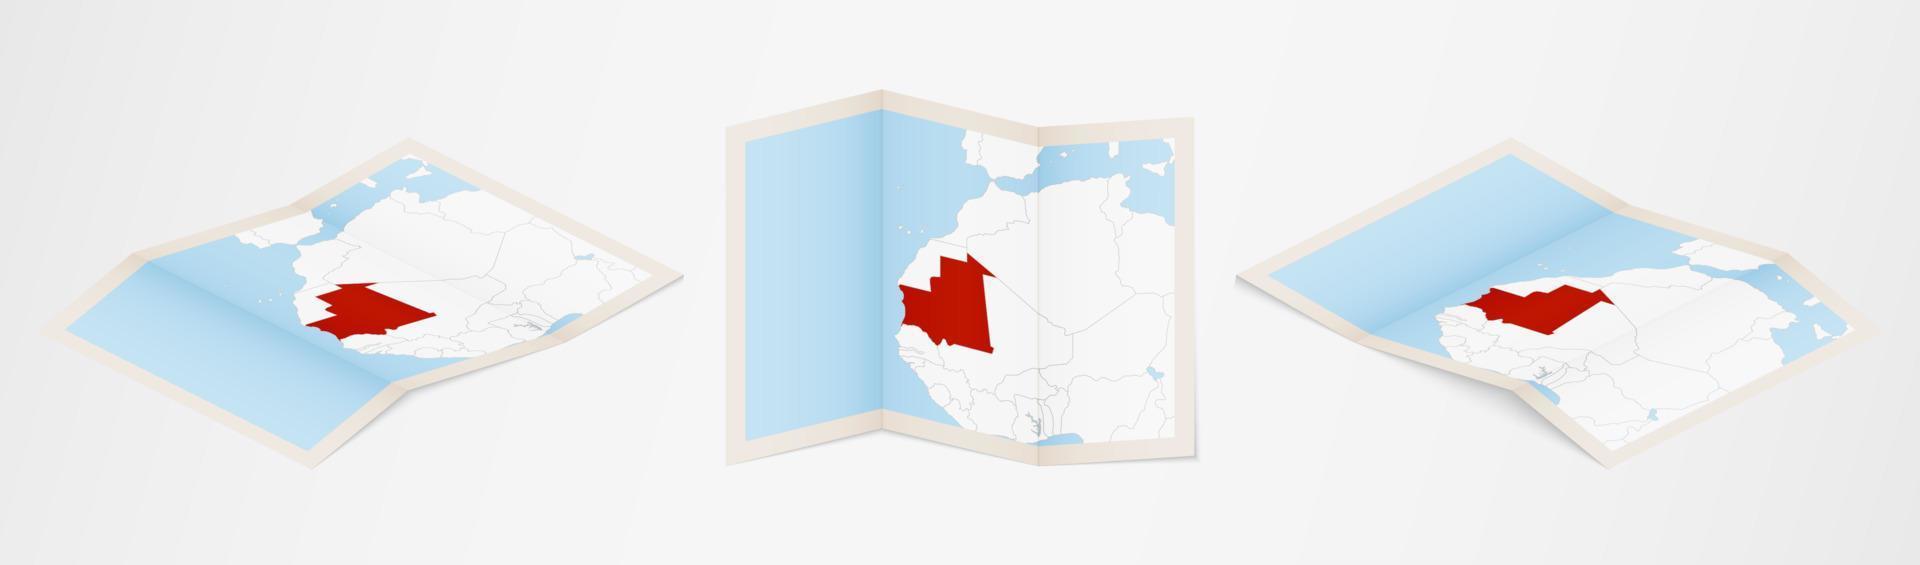 mapa plegado de mauritania en tres versiones diferentes. vector